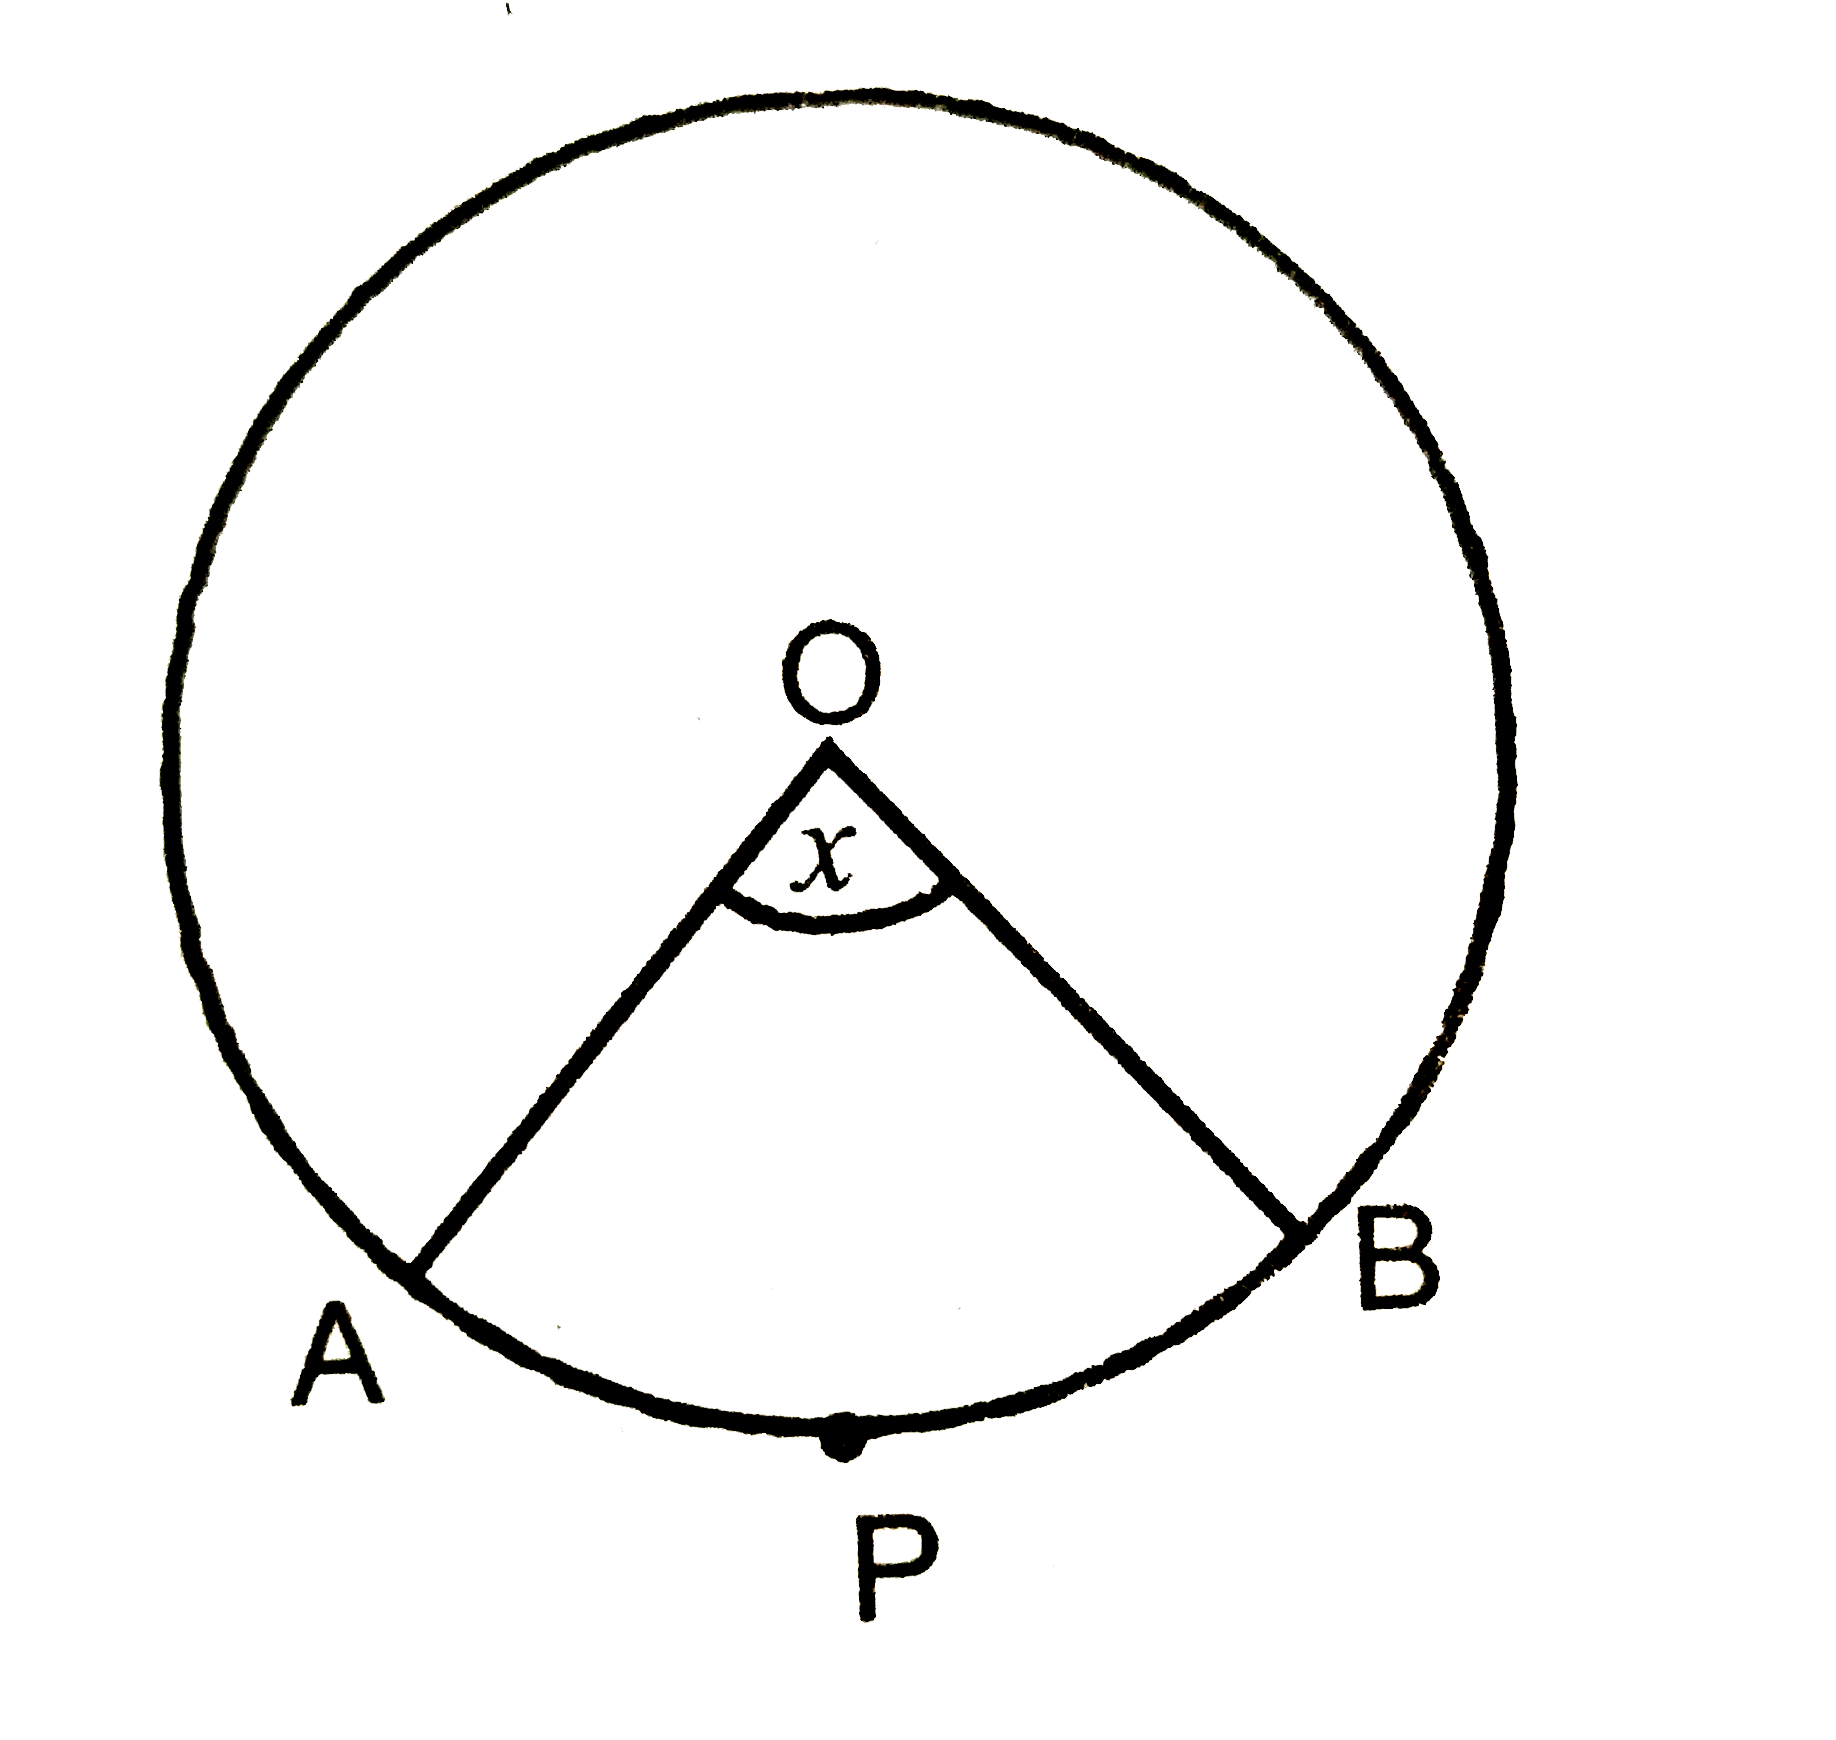 दिए  गए चित्र  में   O वृत्त  का  केंद्र  है।  त्रिज्यखंड OAPB  का  क्षेत्रफल, वृत्त  के क्षेत्रफल  का    5/18     वां  भाग  है।  तब x  का मान ज्ञात करे।